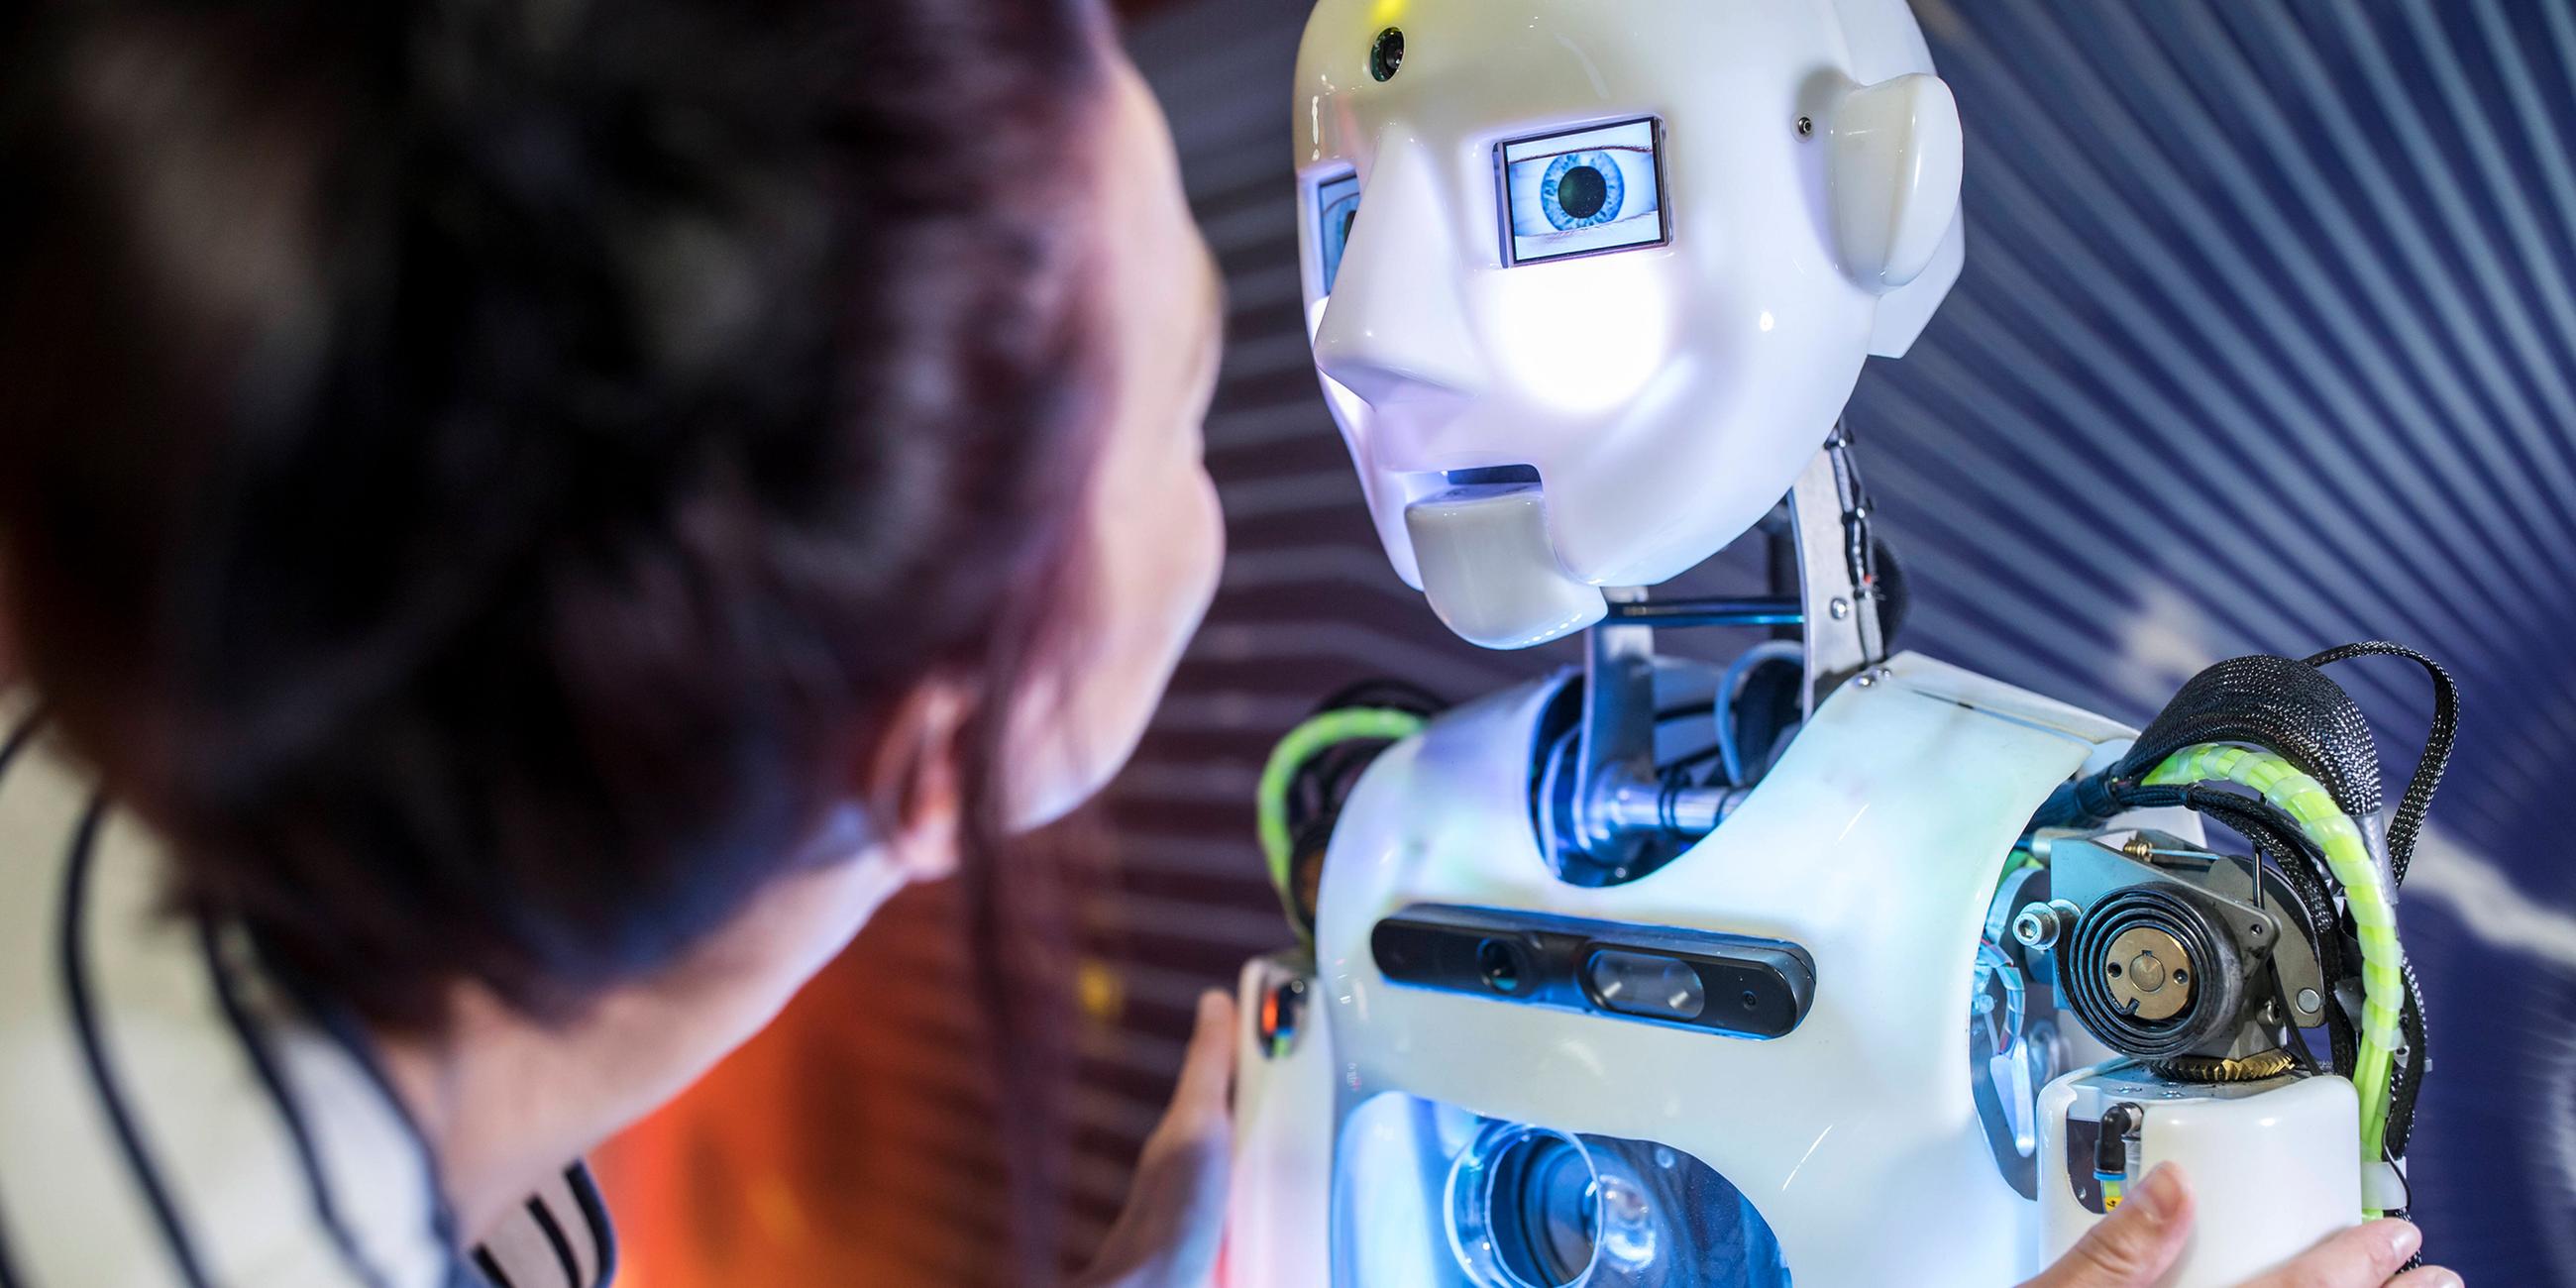 Frau beugt sich nach an einen Roboter in menschlicher Gestalt und betrachtet sein Gesicht.